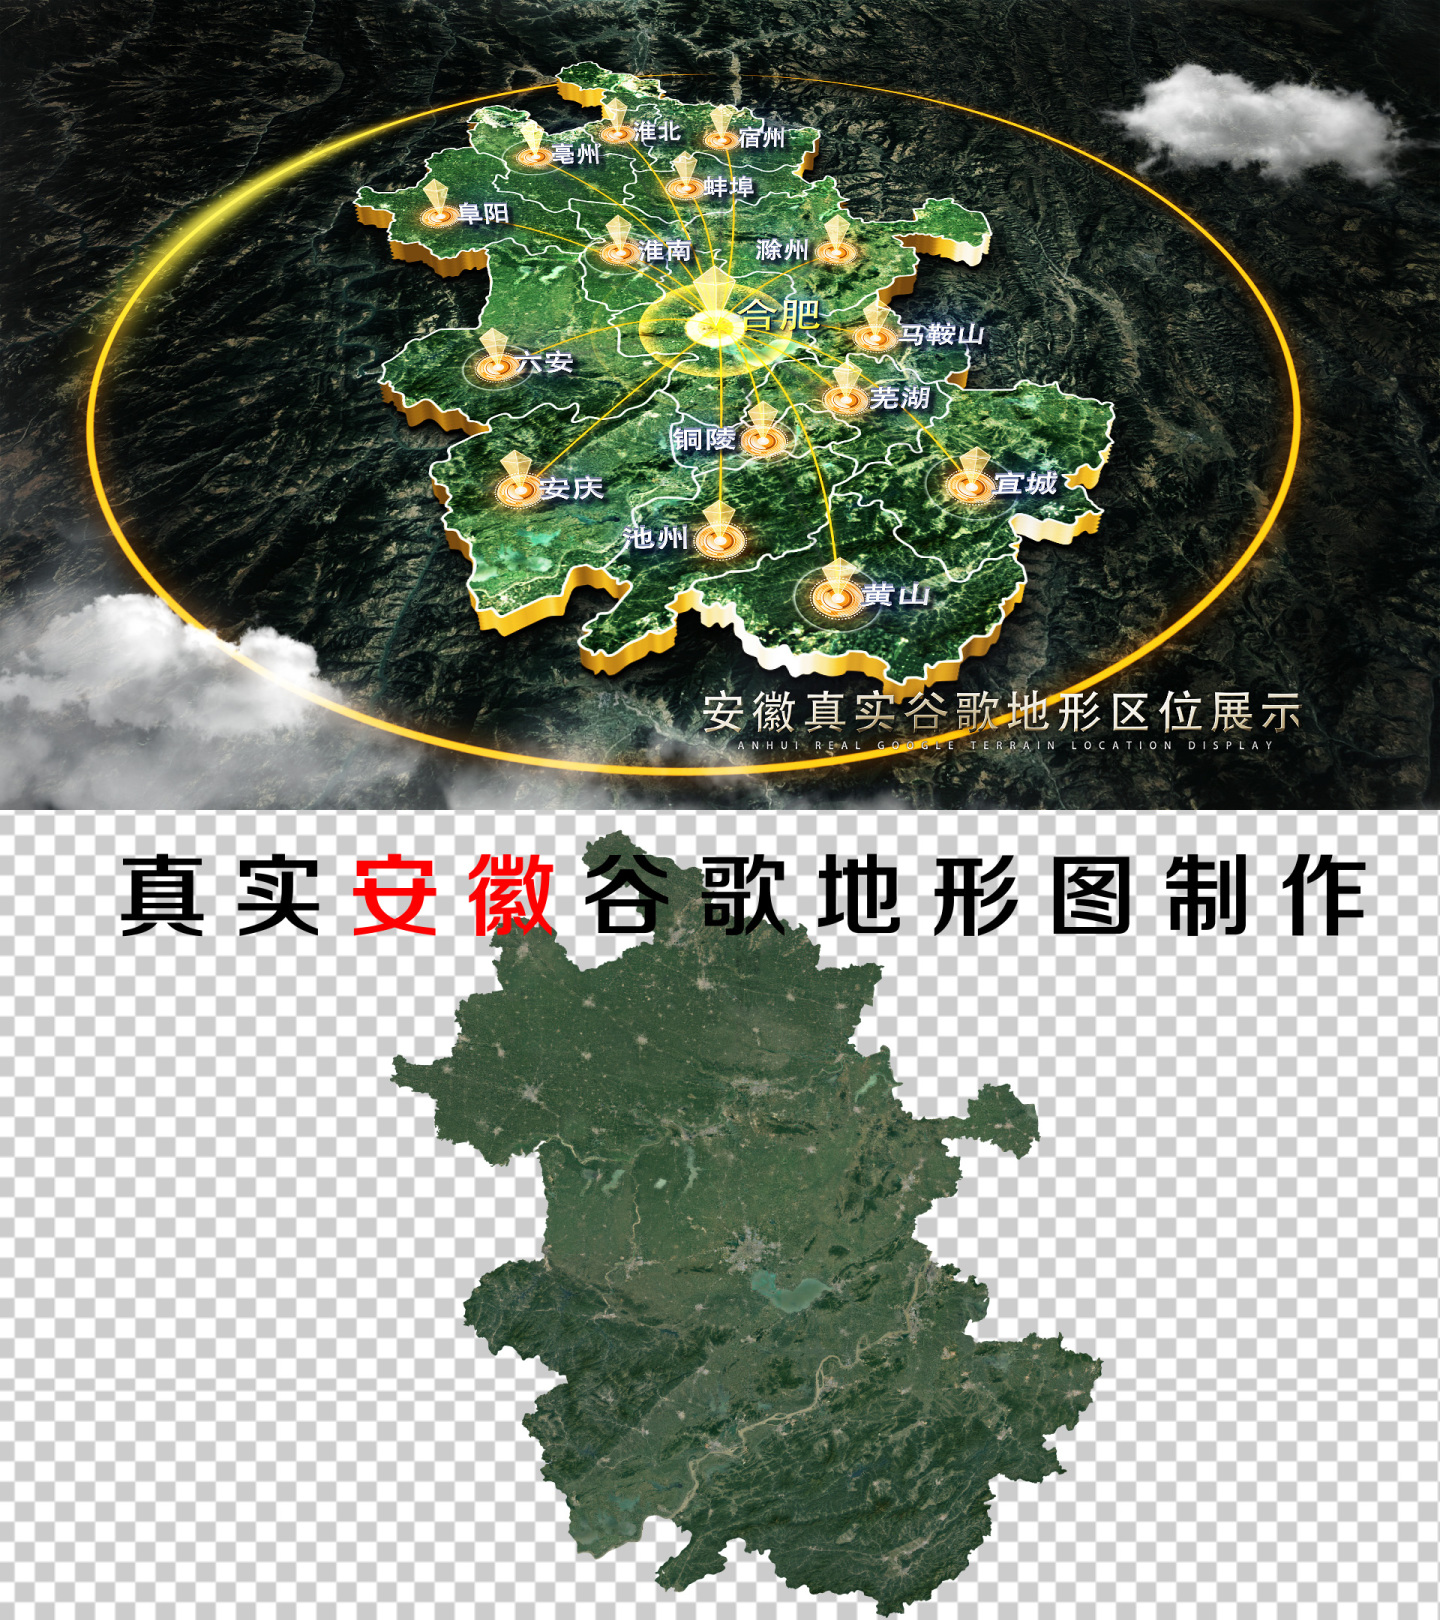 【无插件】安徽区位谷歌真实地形图